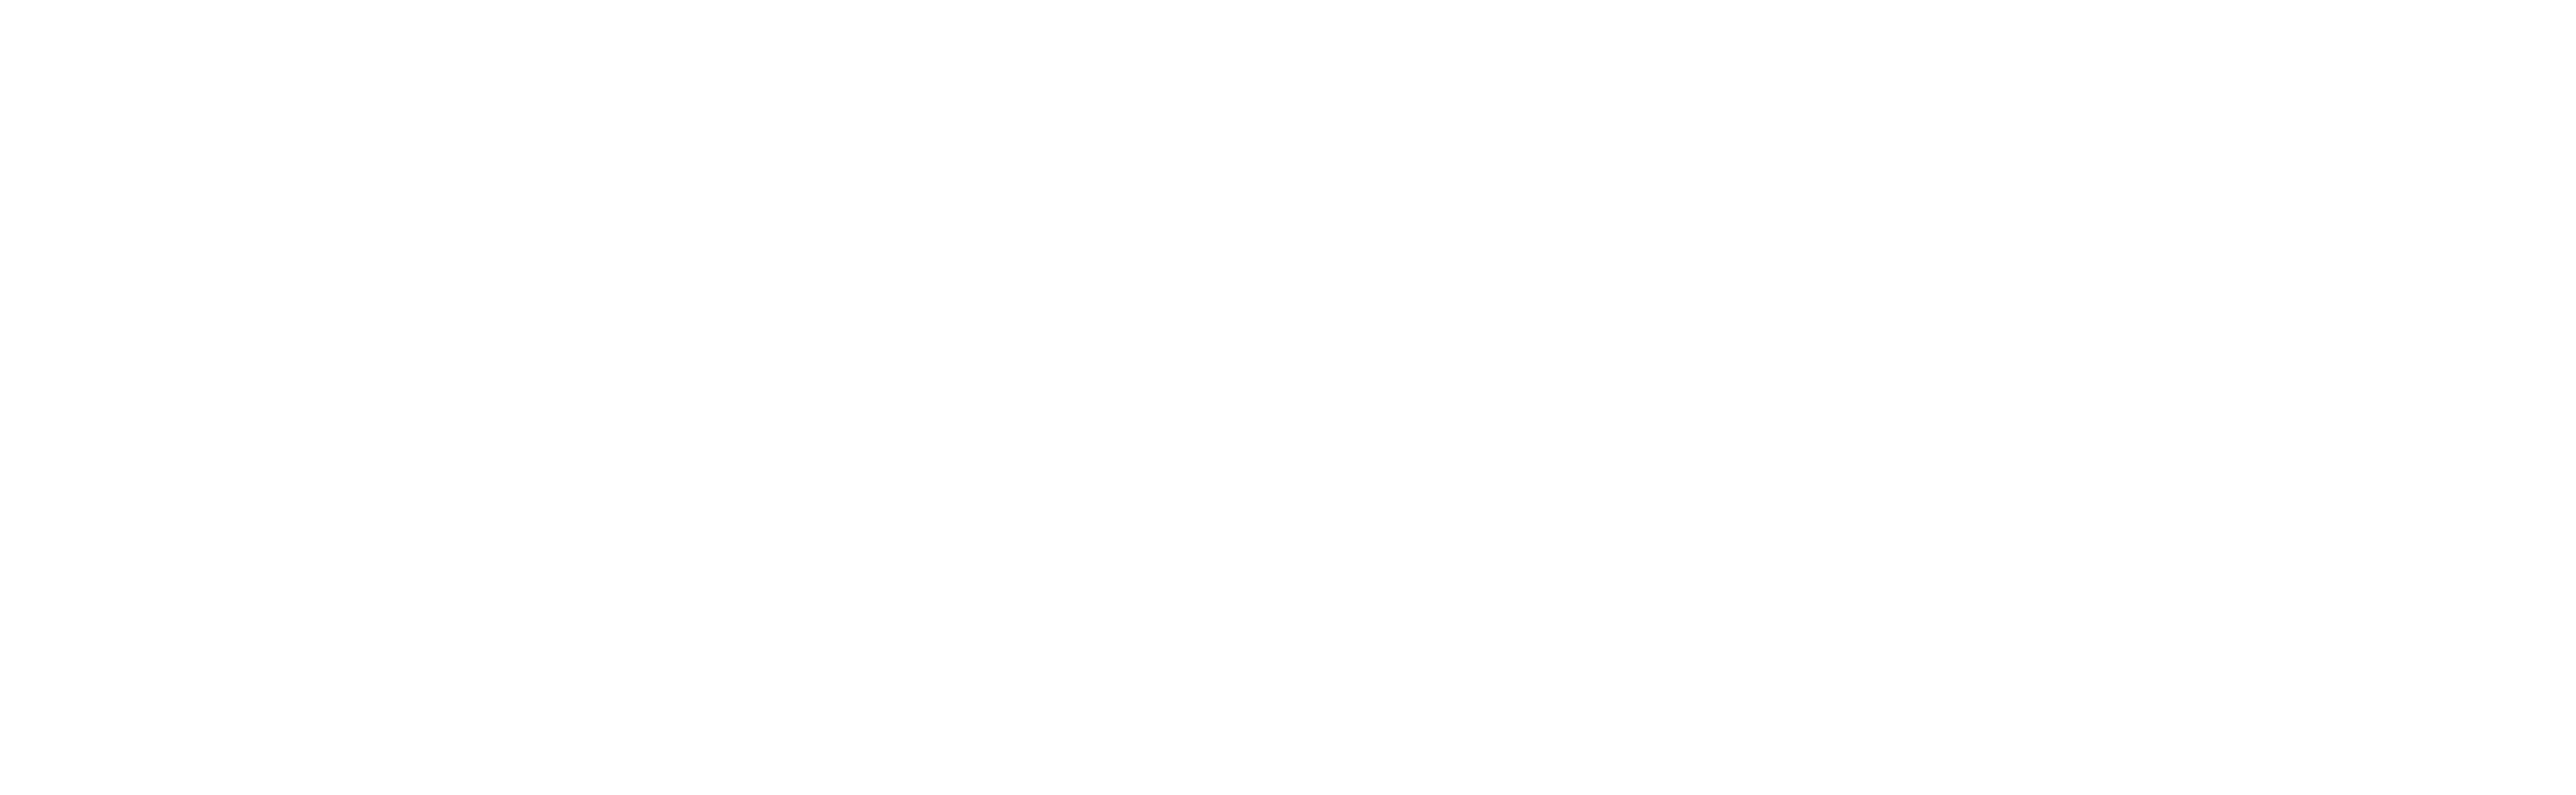 Logo mayr melnhof